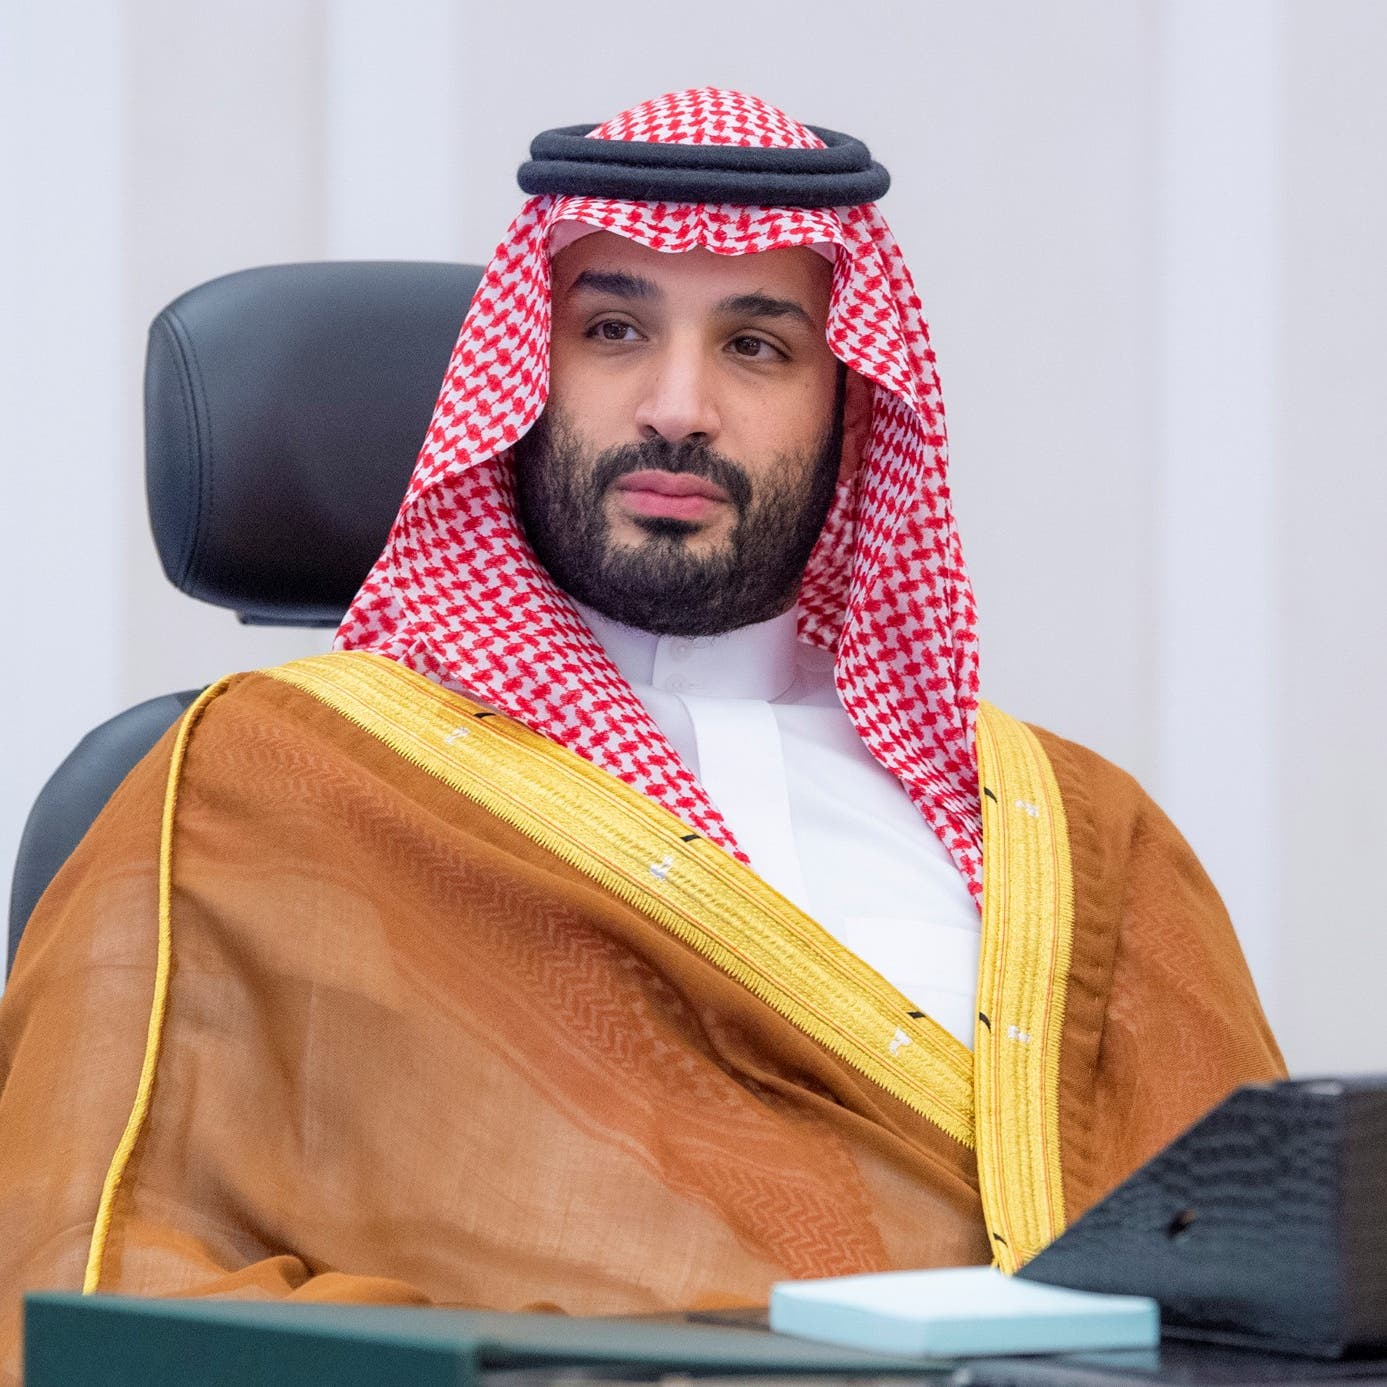 ولي العهد السعودي يطلق مخطط "وسط جدة" باستثمارات 75 مليار ريال